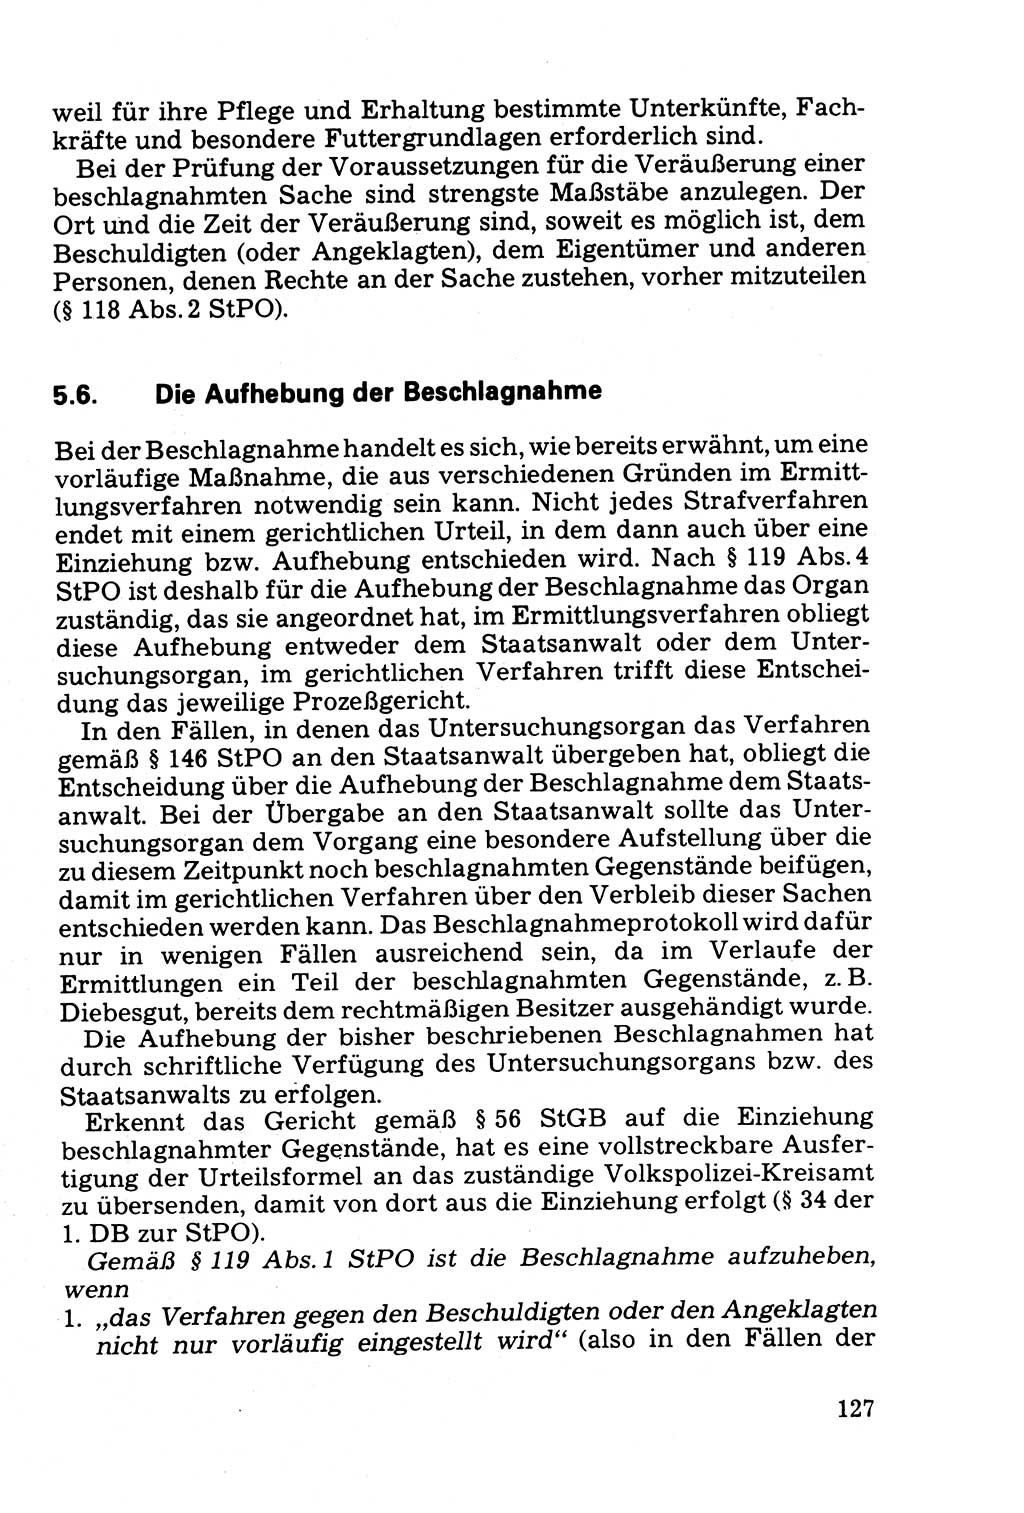 Die Durchsuchung und die Beschlagnahme [Deutsche Demokratische Republik (DDR)] 1979, Seite 127 (Durchs. Beschl. DDR 1979, S. 127)